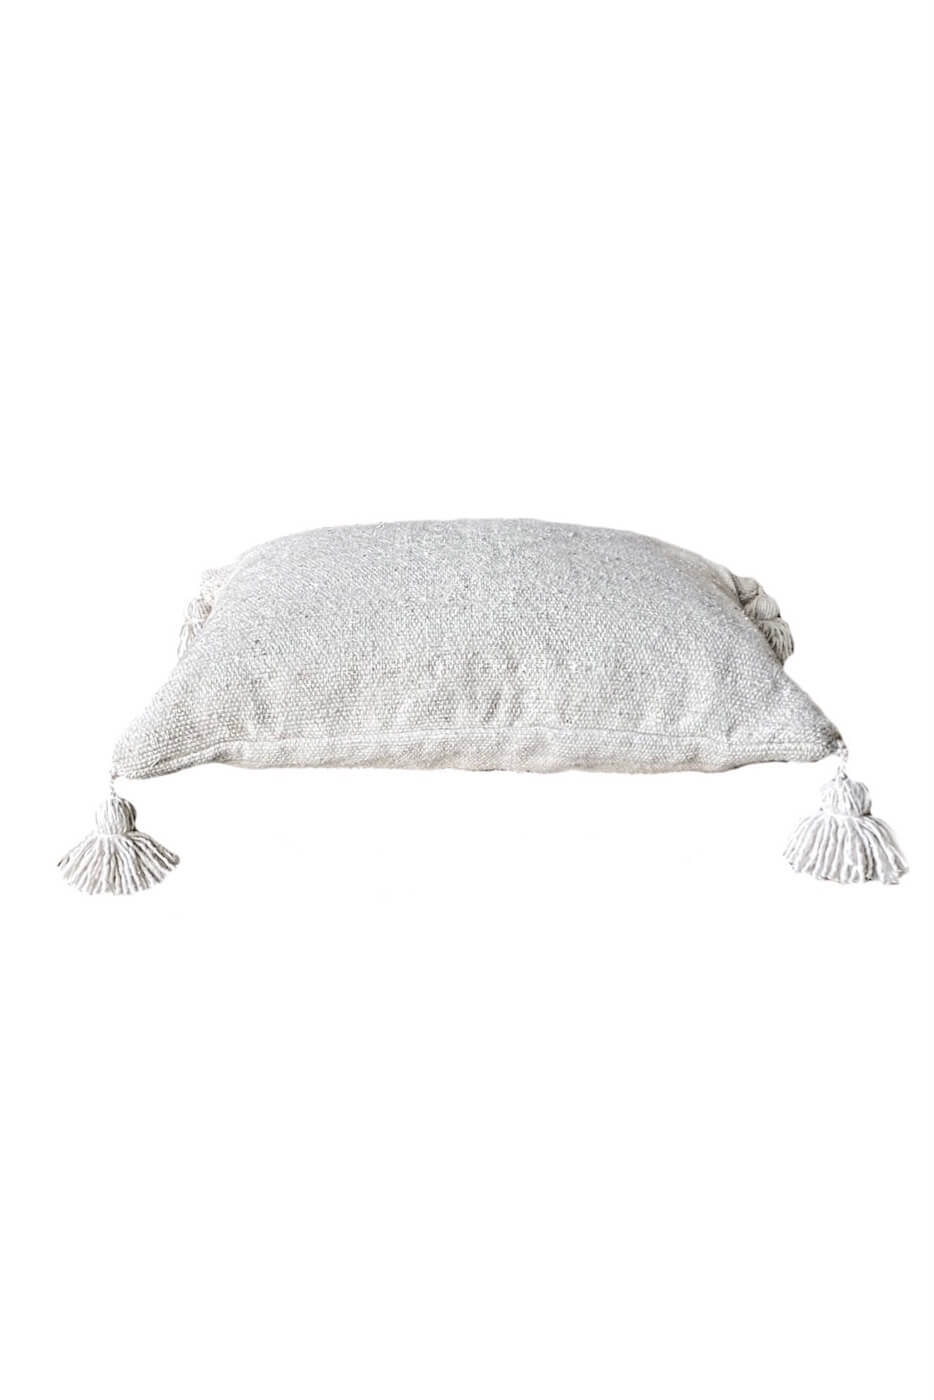 Moroccan Linen Pillow - Cream